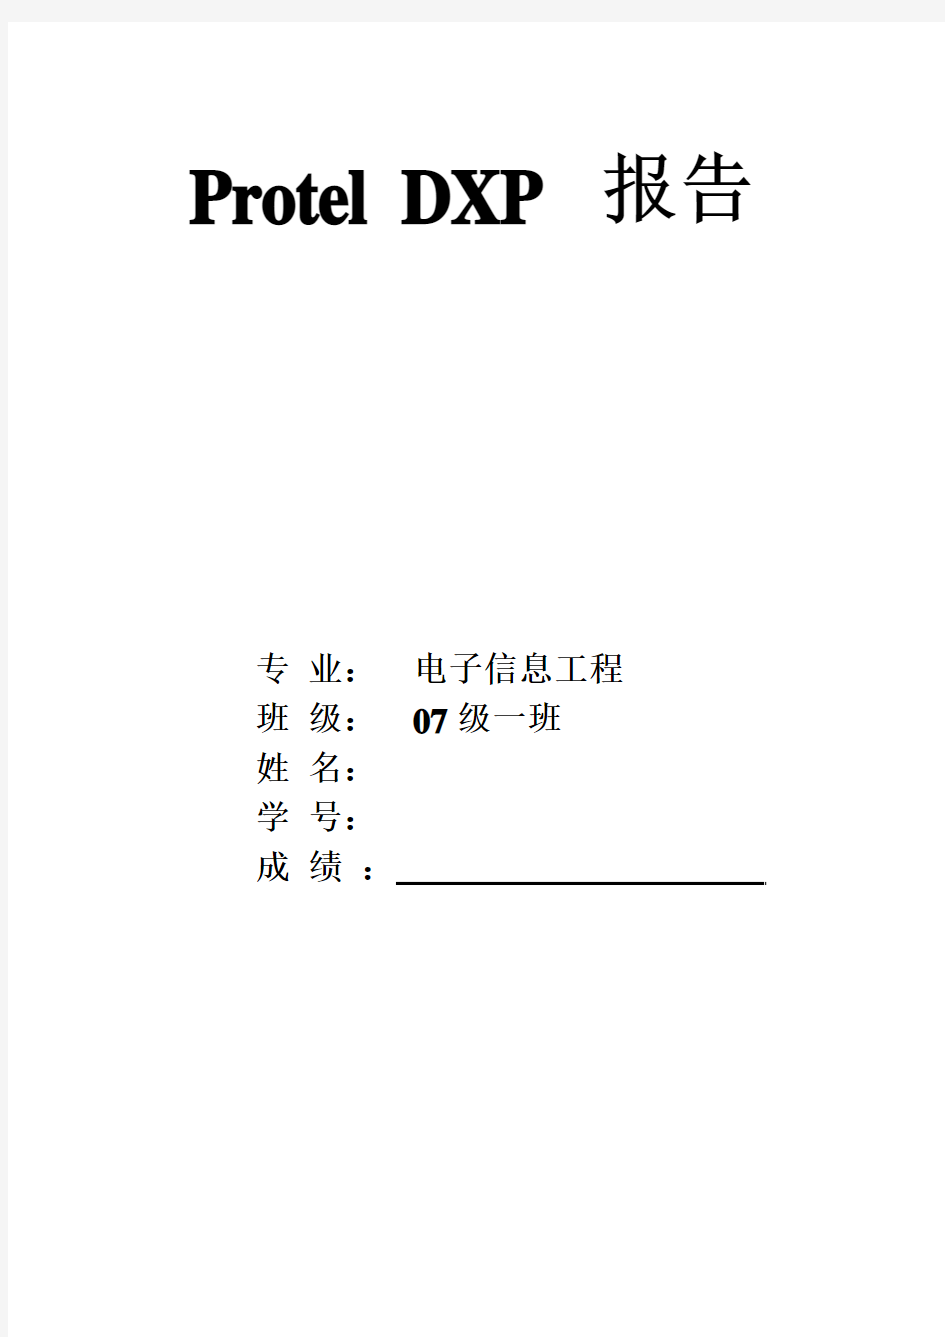 Protel DXP 报告